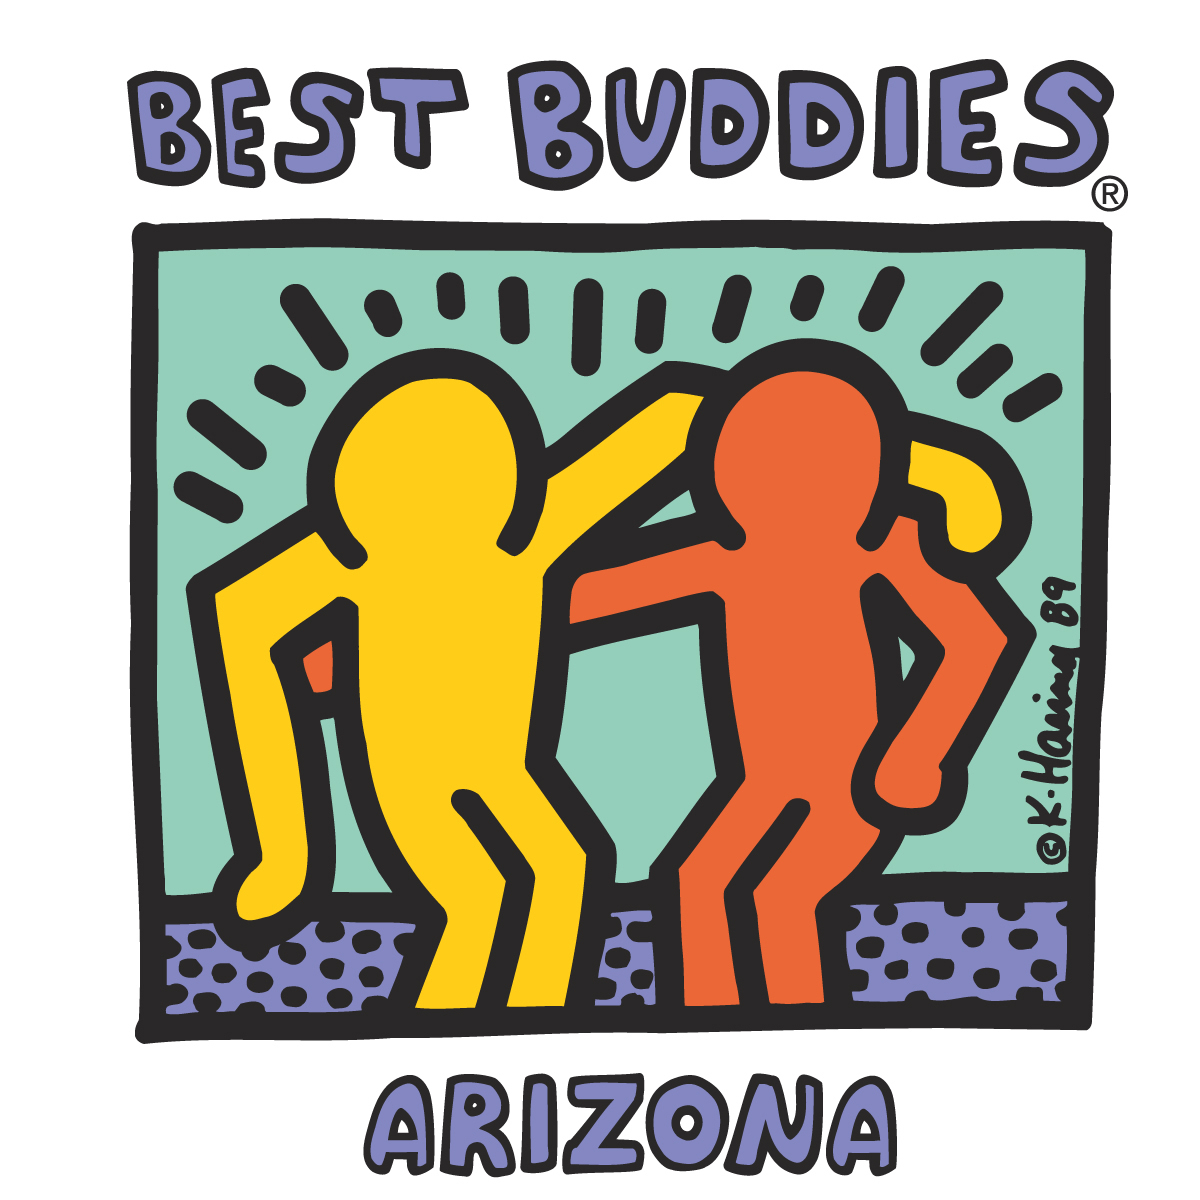 Visit the Best Buddies Arizona Website